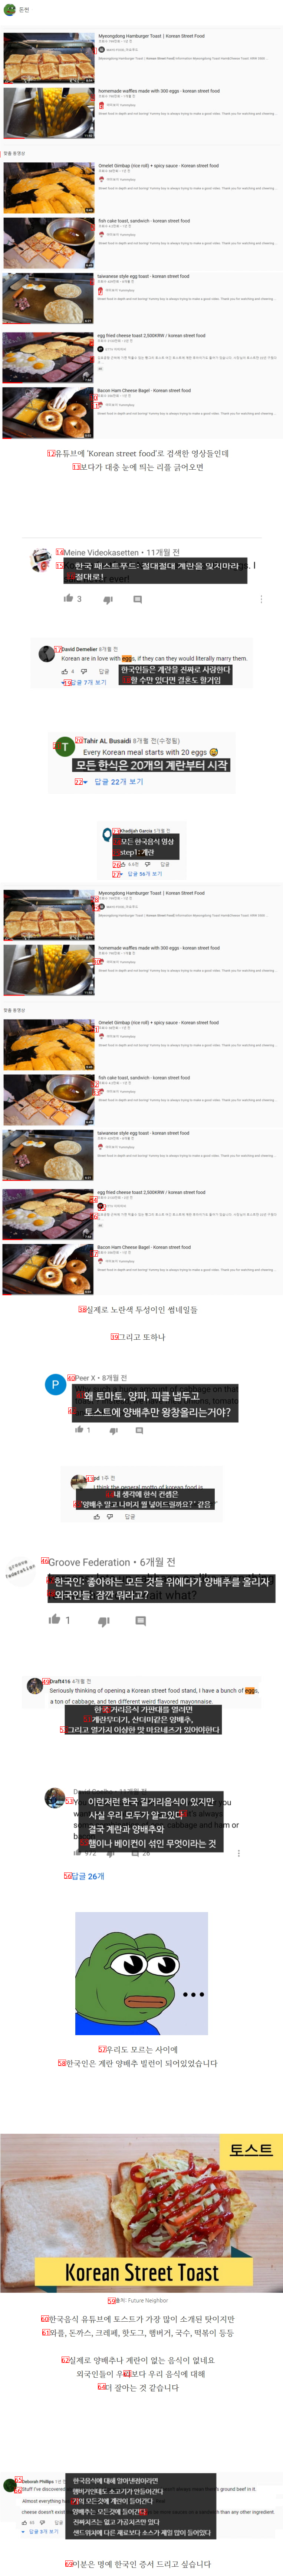 外国人が見た韓国の屋台料理の特徴「ㄷ」JPG